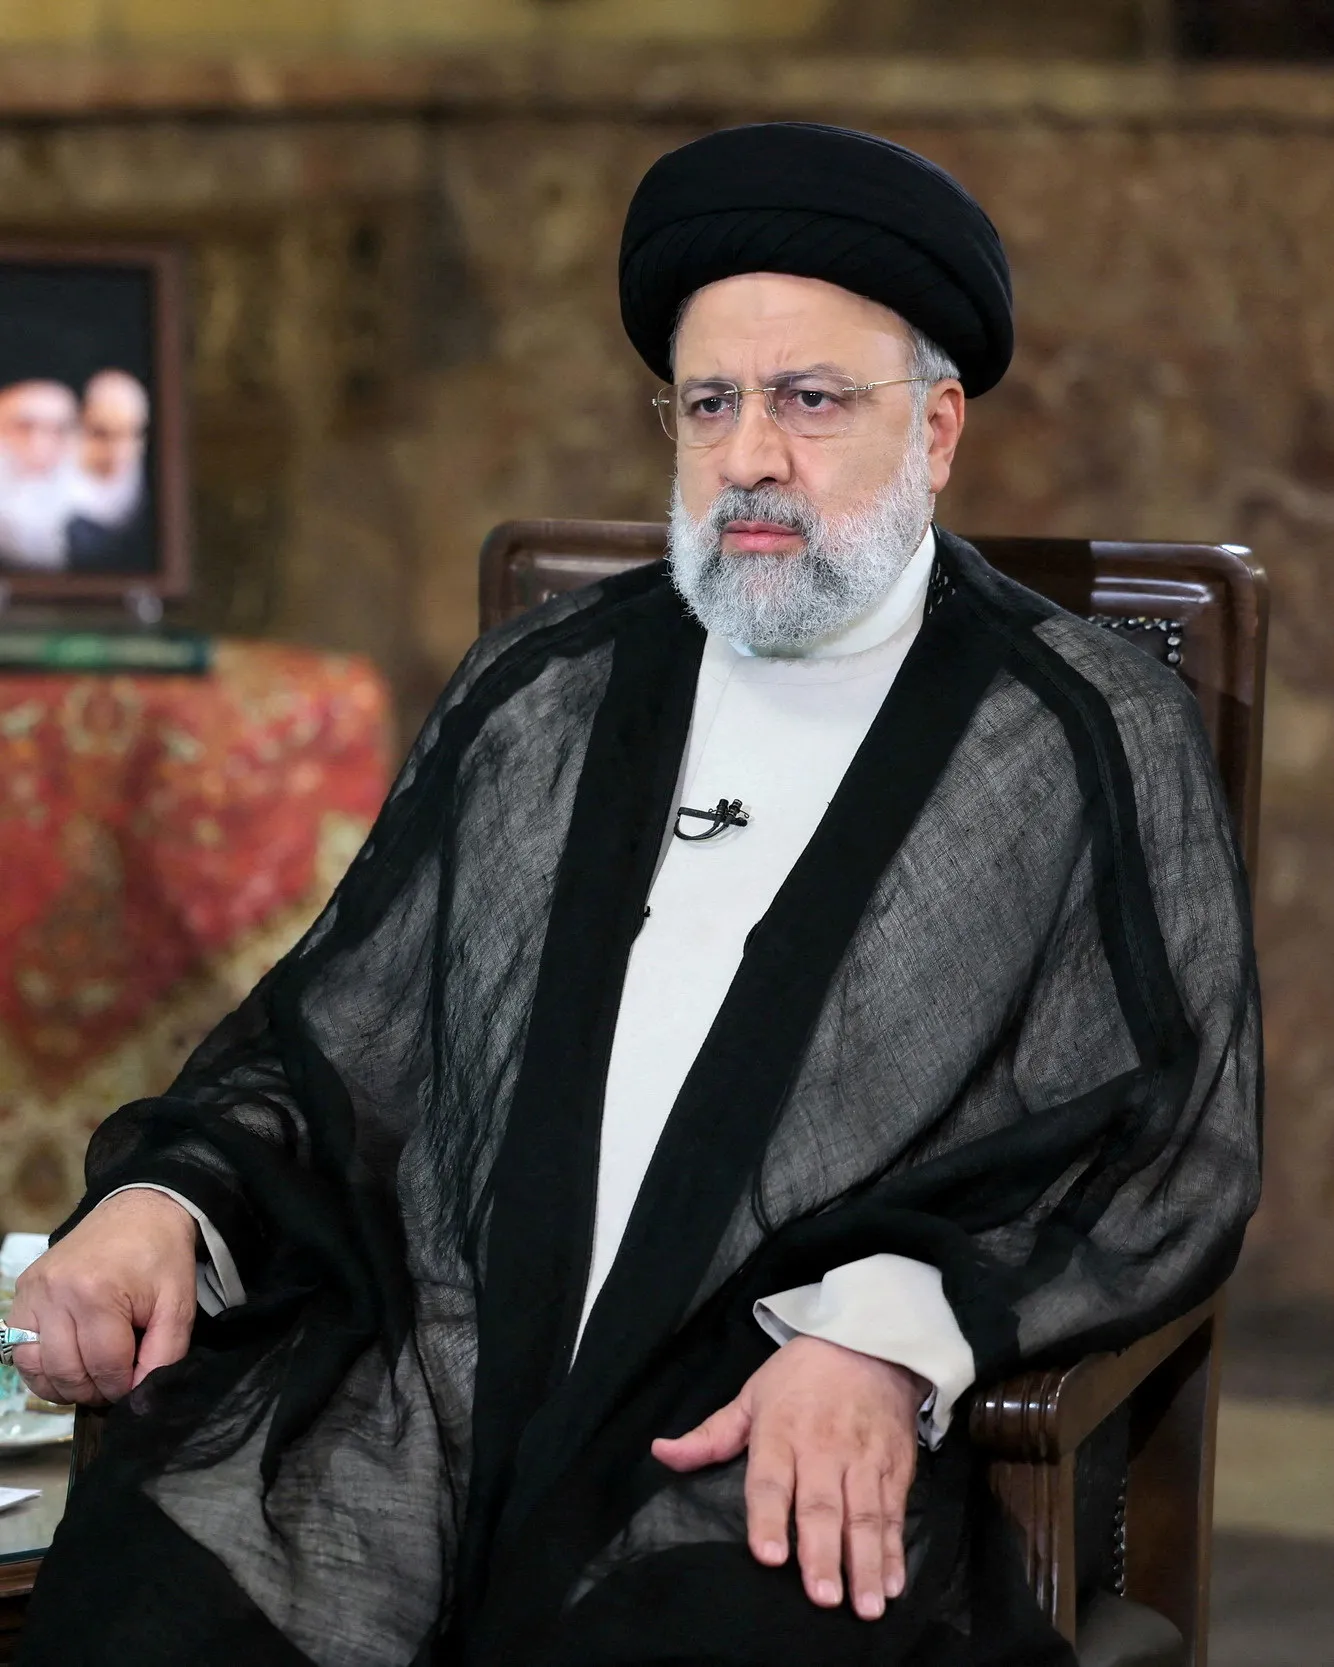 Vrtulník s íránským prezidentem havaroval. Informace jsou znepokojivé, řekl státní činitel